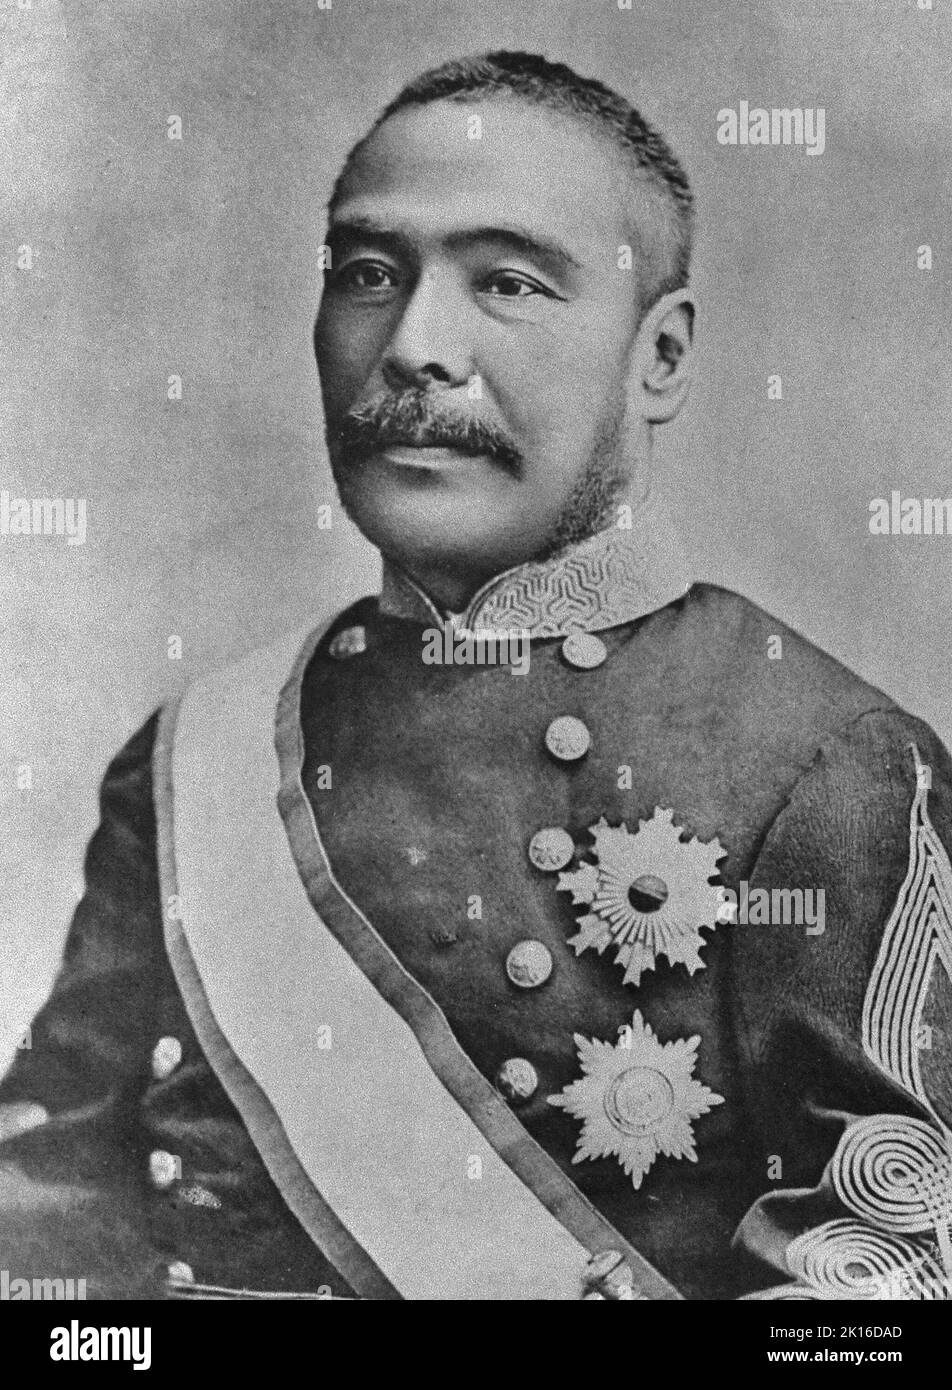 Ritratto di Kuroda Kiyotaka (1840-1900), politico giapponese del periodo Meiji, tenente generale dell'esercito imperiale giapponese, secondo primo ministro giapponese (1888-1889). È stato anche vice presidente della Commissione per lo sviluppo di Hokkaido (Kaitaku-shi). Foto Stock